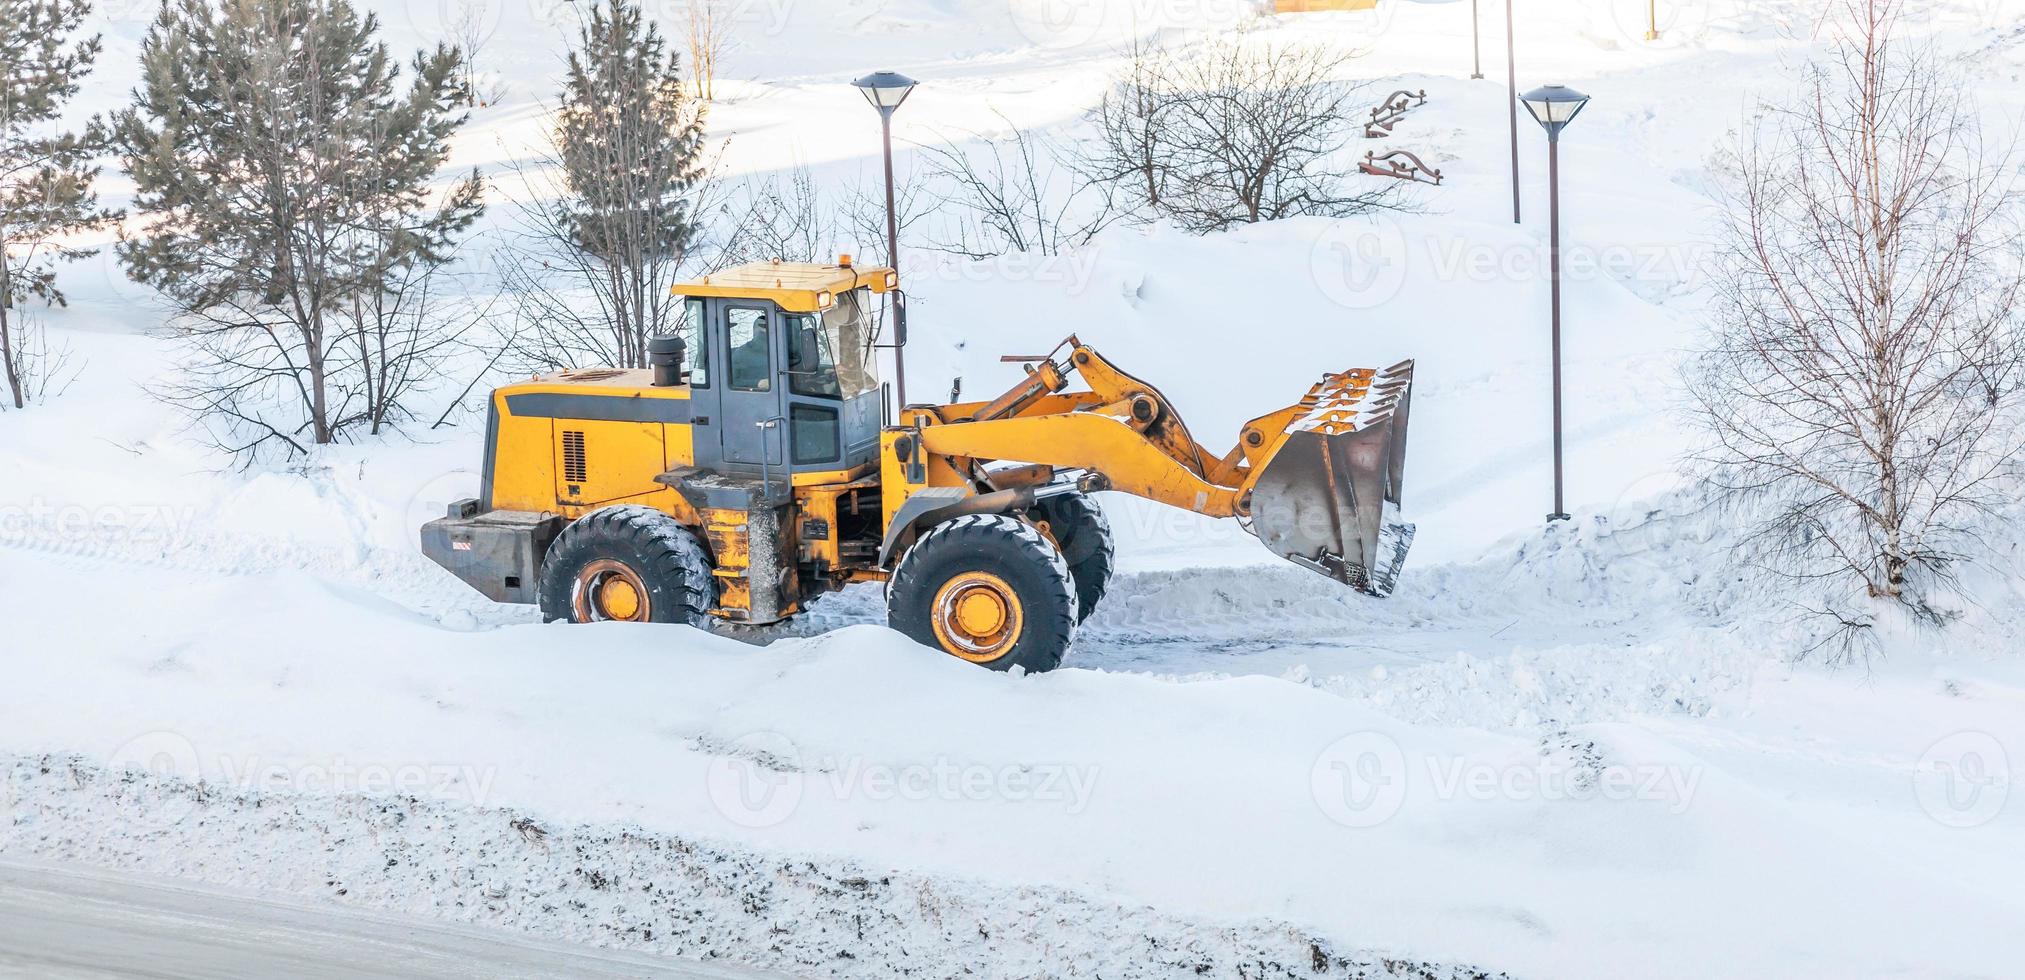 limpieza de nieve tractor despeja el camino después de fuertes nevadas. un gran tractor naranja quita la nieve de la carretera y despeja la acera. limpieza de caminos en la ciudad de la nieve en invierno. foto